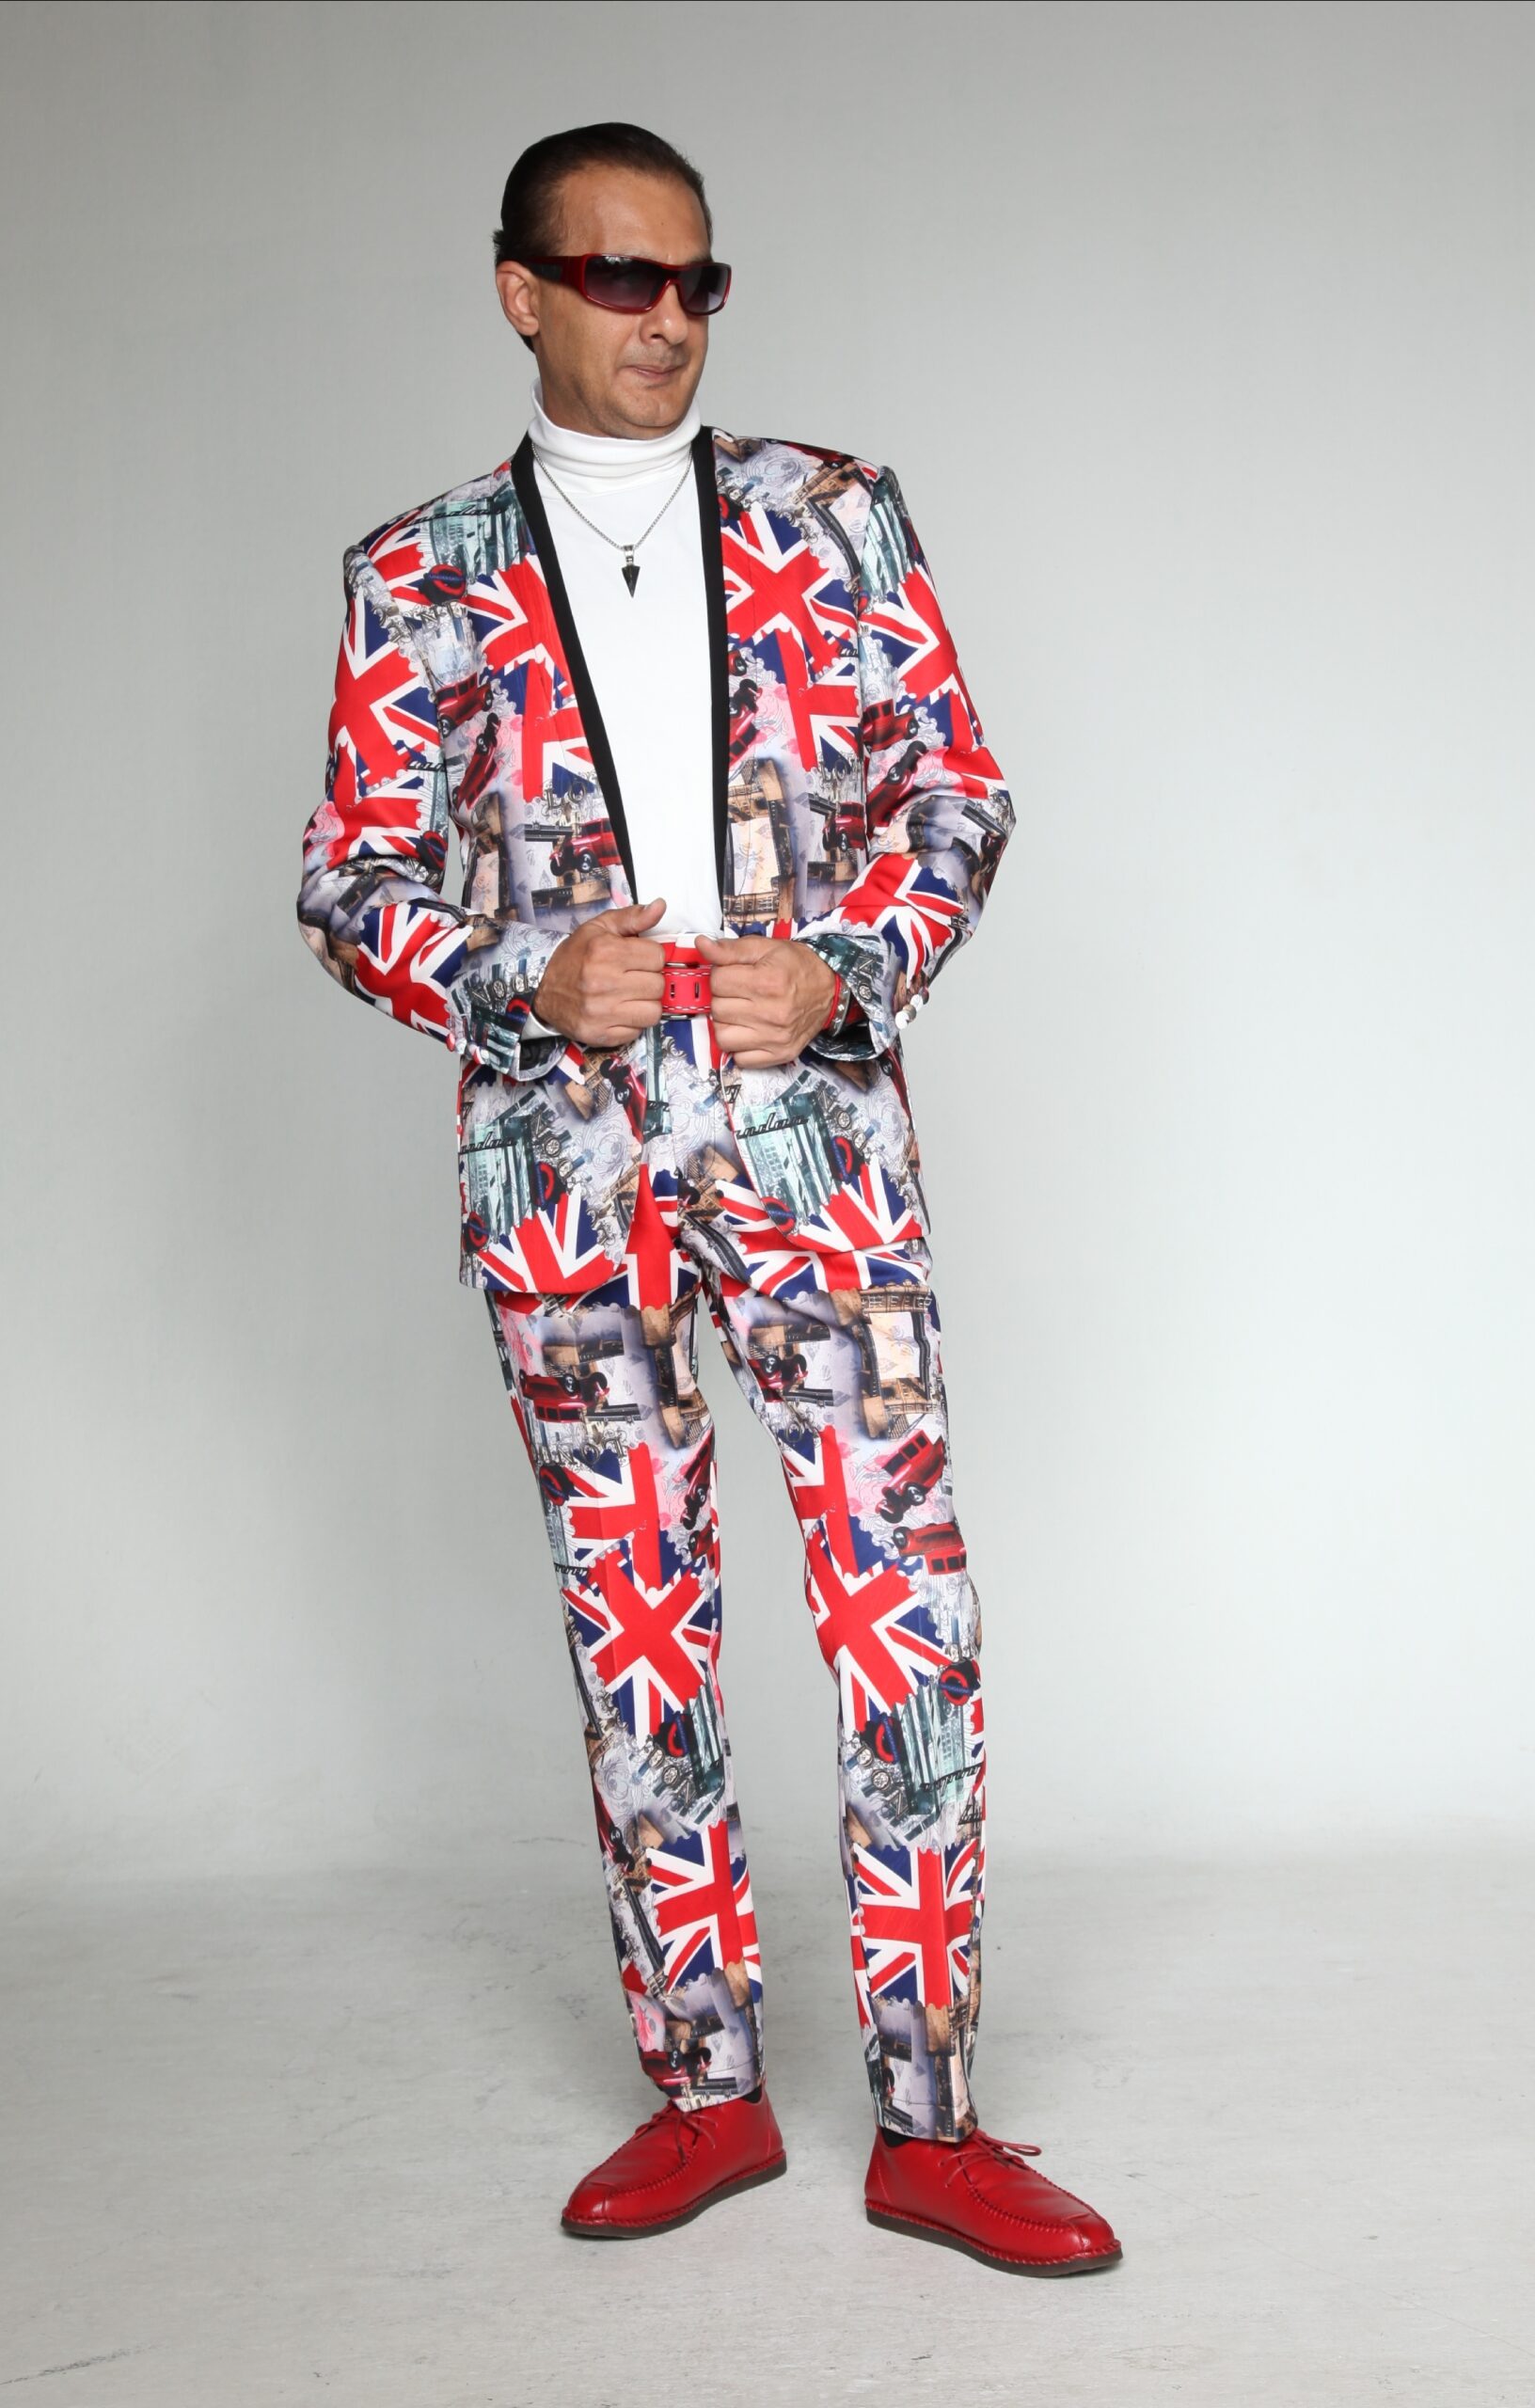 Mst 5005 01 Rent Rental Hire Tuxedo Suit Black Tie Suit Designer Suits Shop Tailor